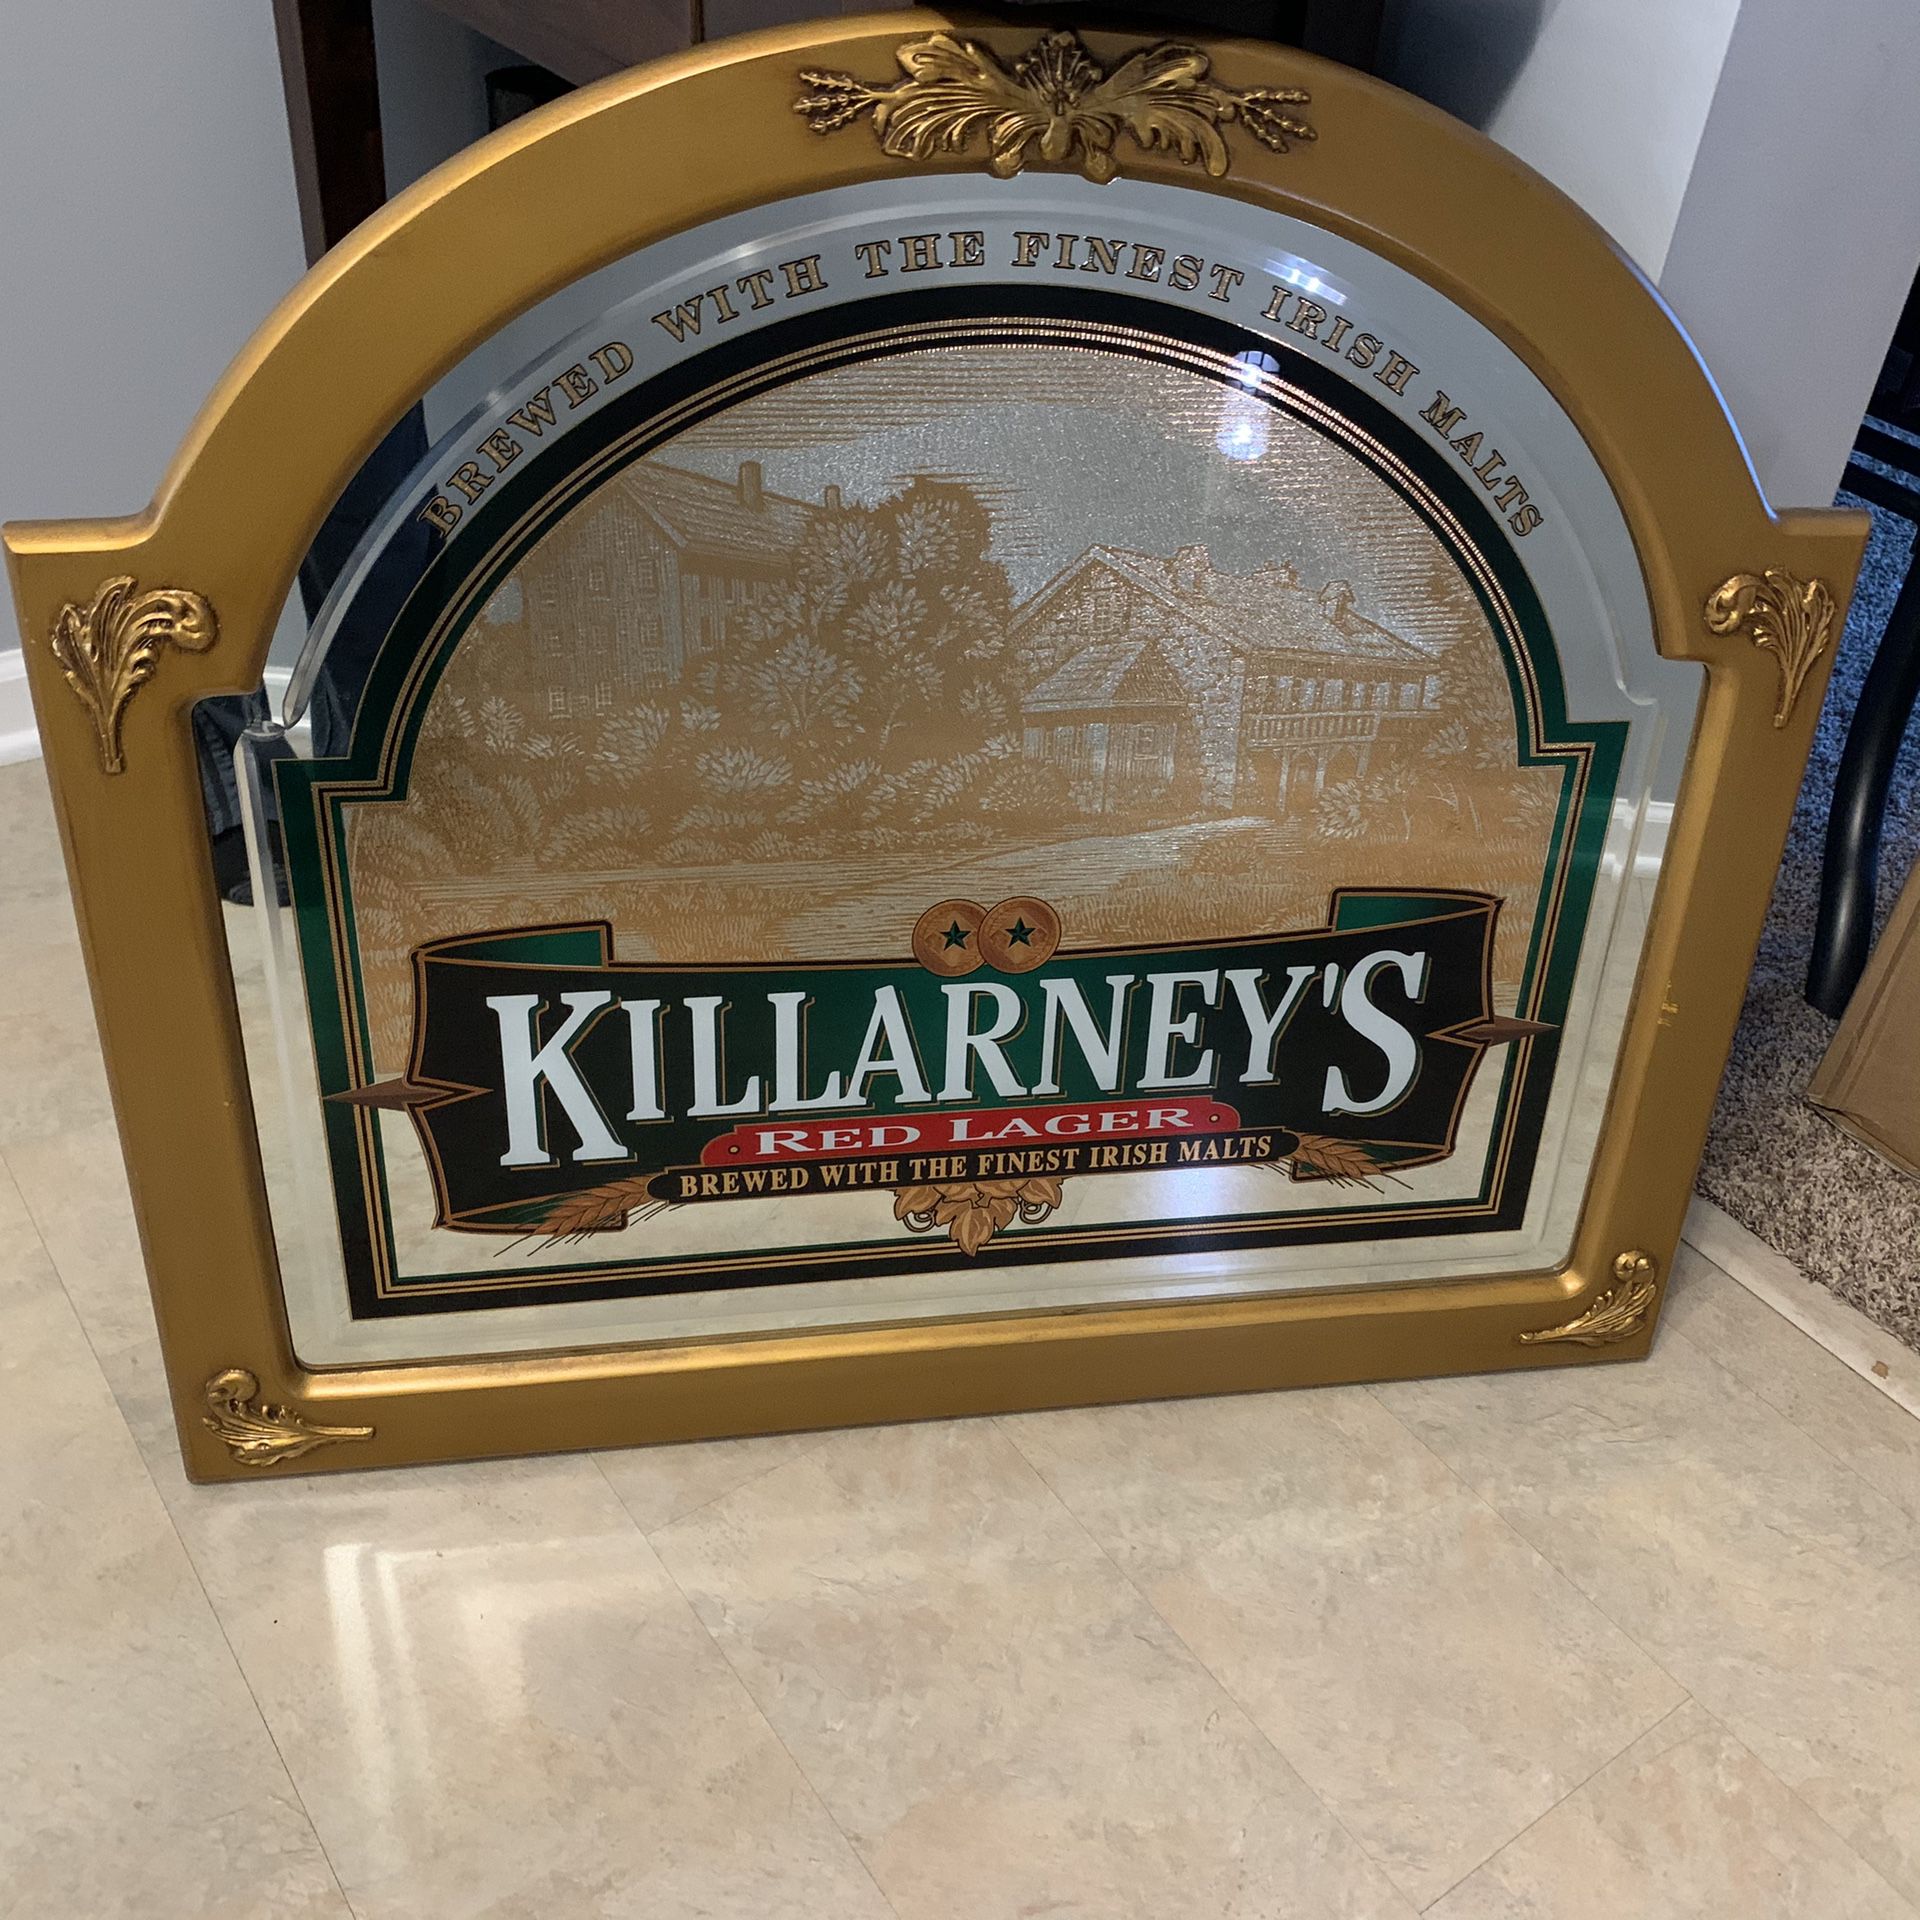 Killarney’s pub beer mirror